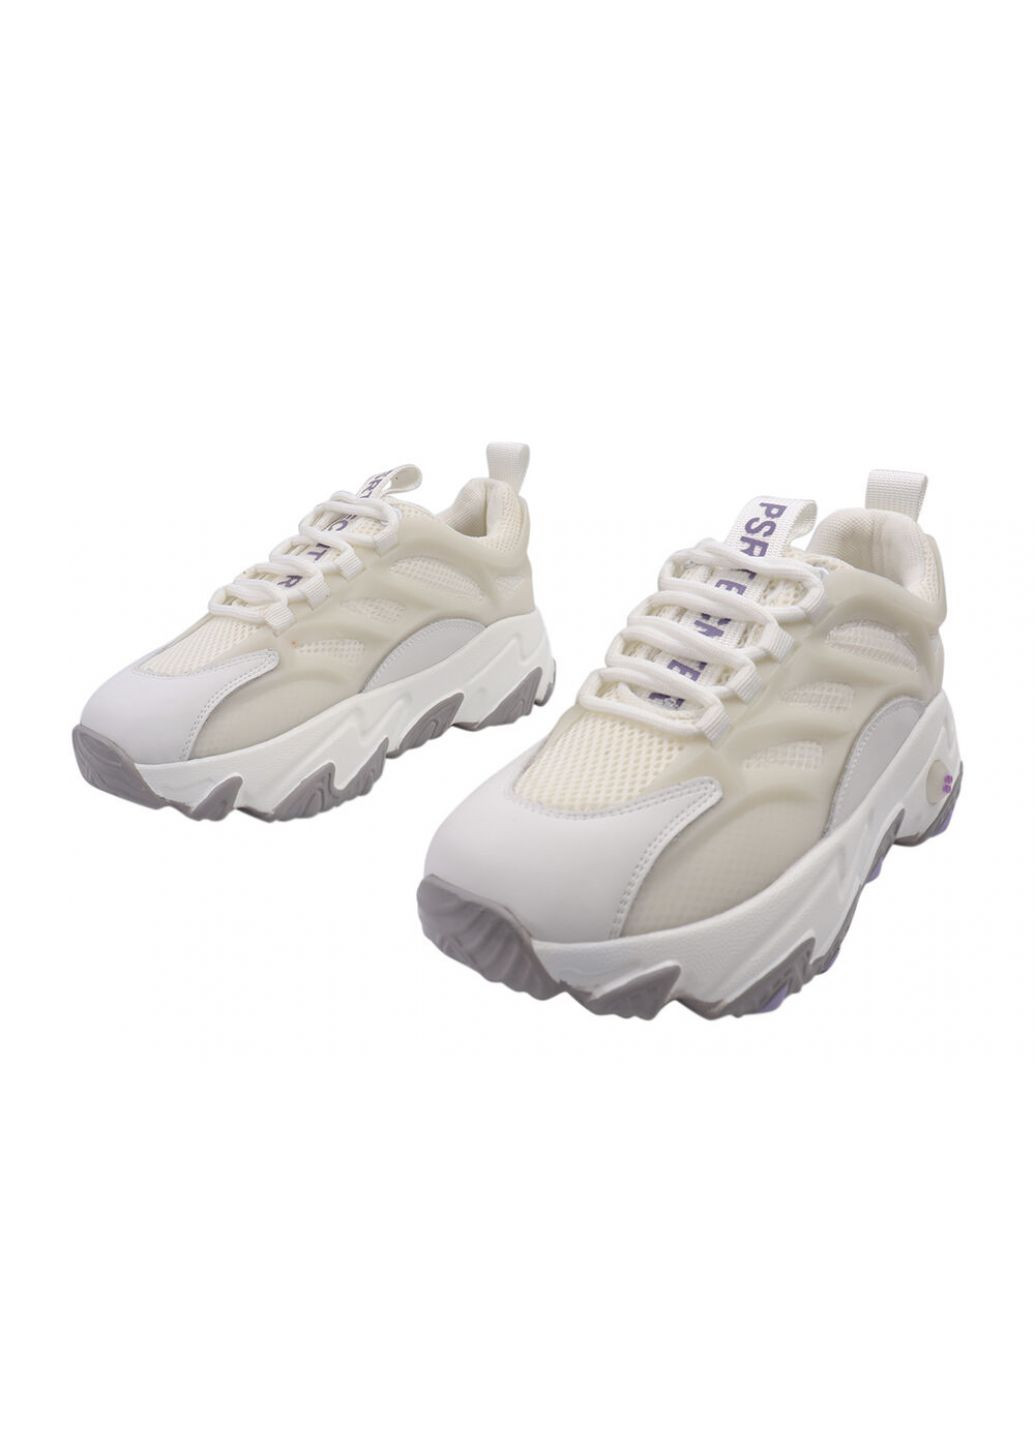 Білі кросівки жіночі з натуральної шкіри, на низькому ходу, на шнурівці, молочні, Lifexpert 621-21DK